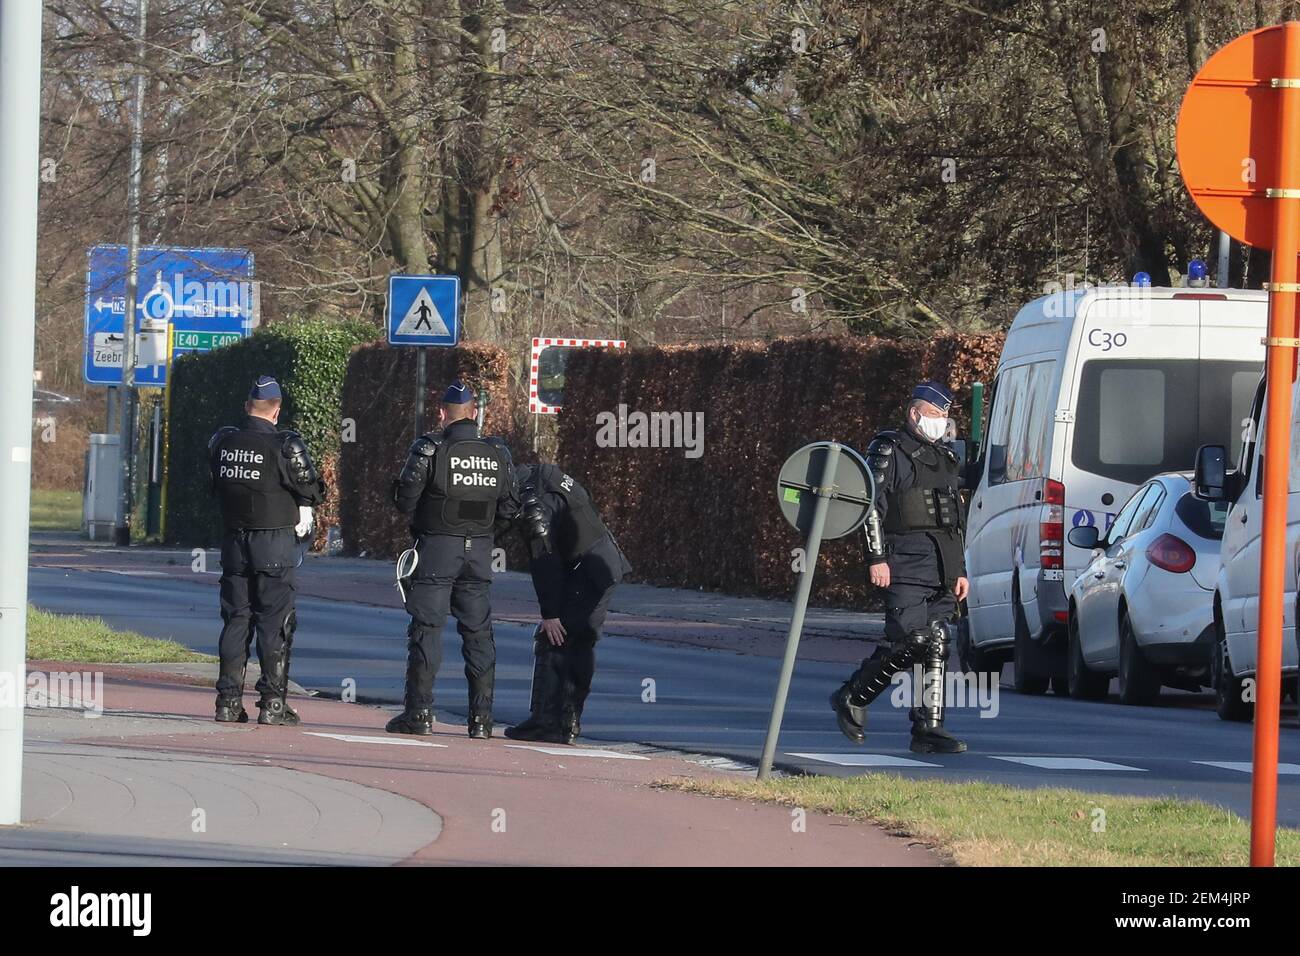 L'illustration montre la prison de Brugge, mercredi 24 février 2021. Selon plusieurs médias, une situation d'otage est actuellement à portée de main Banque D'Images